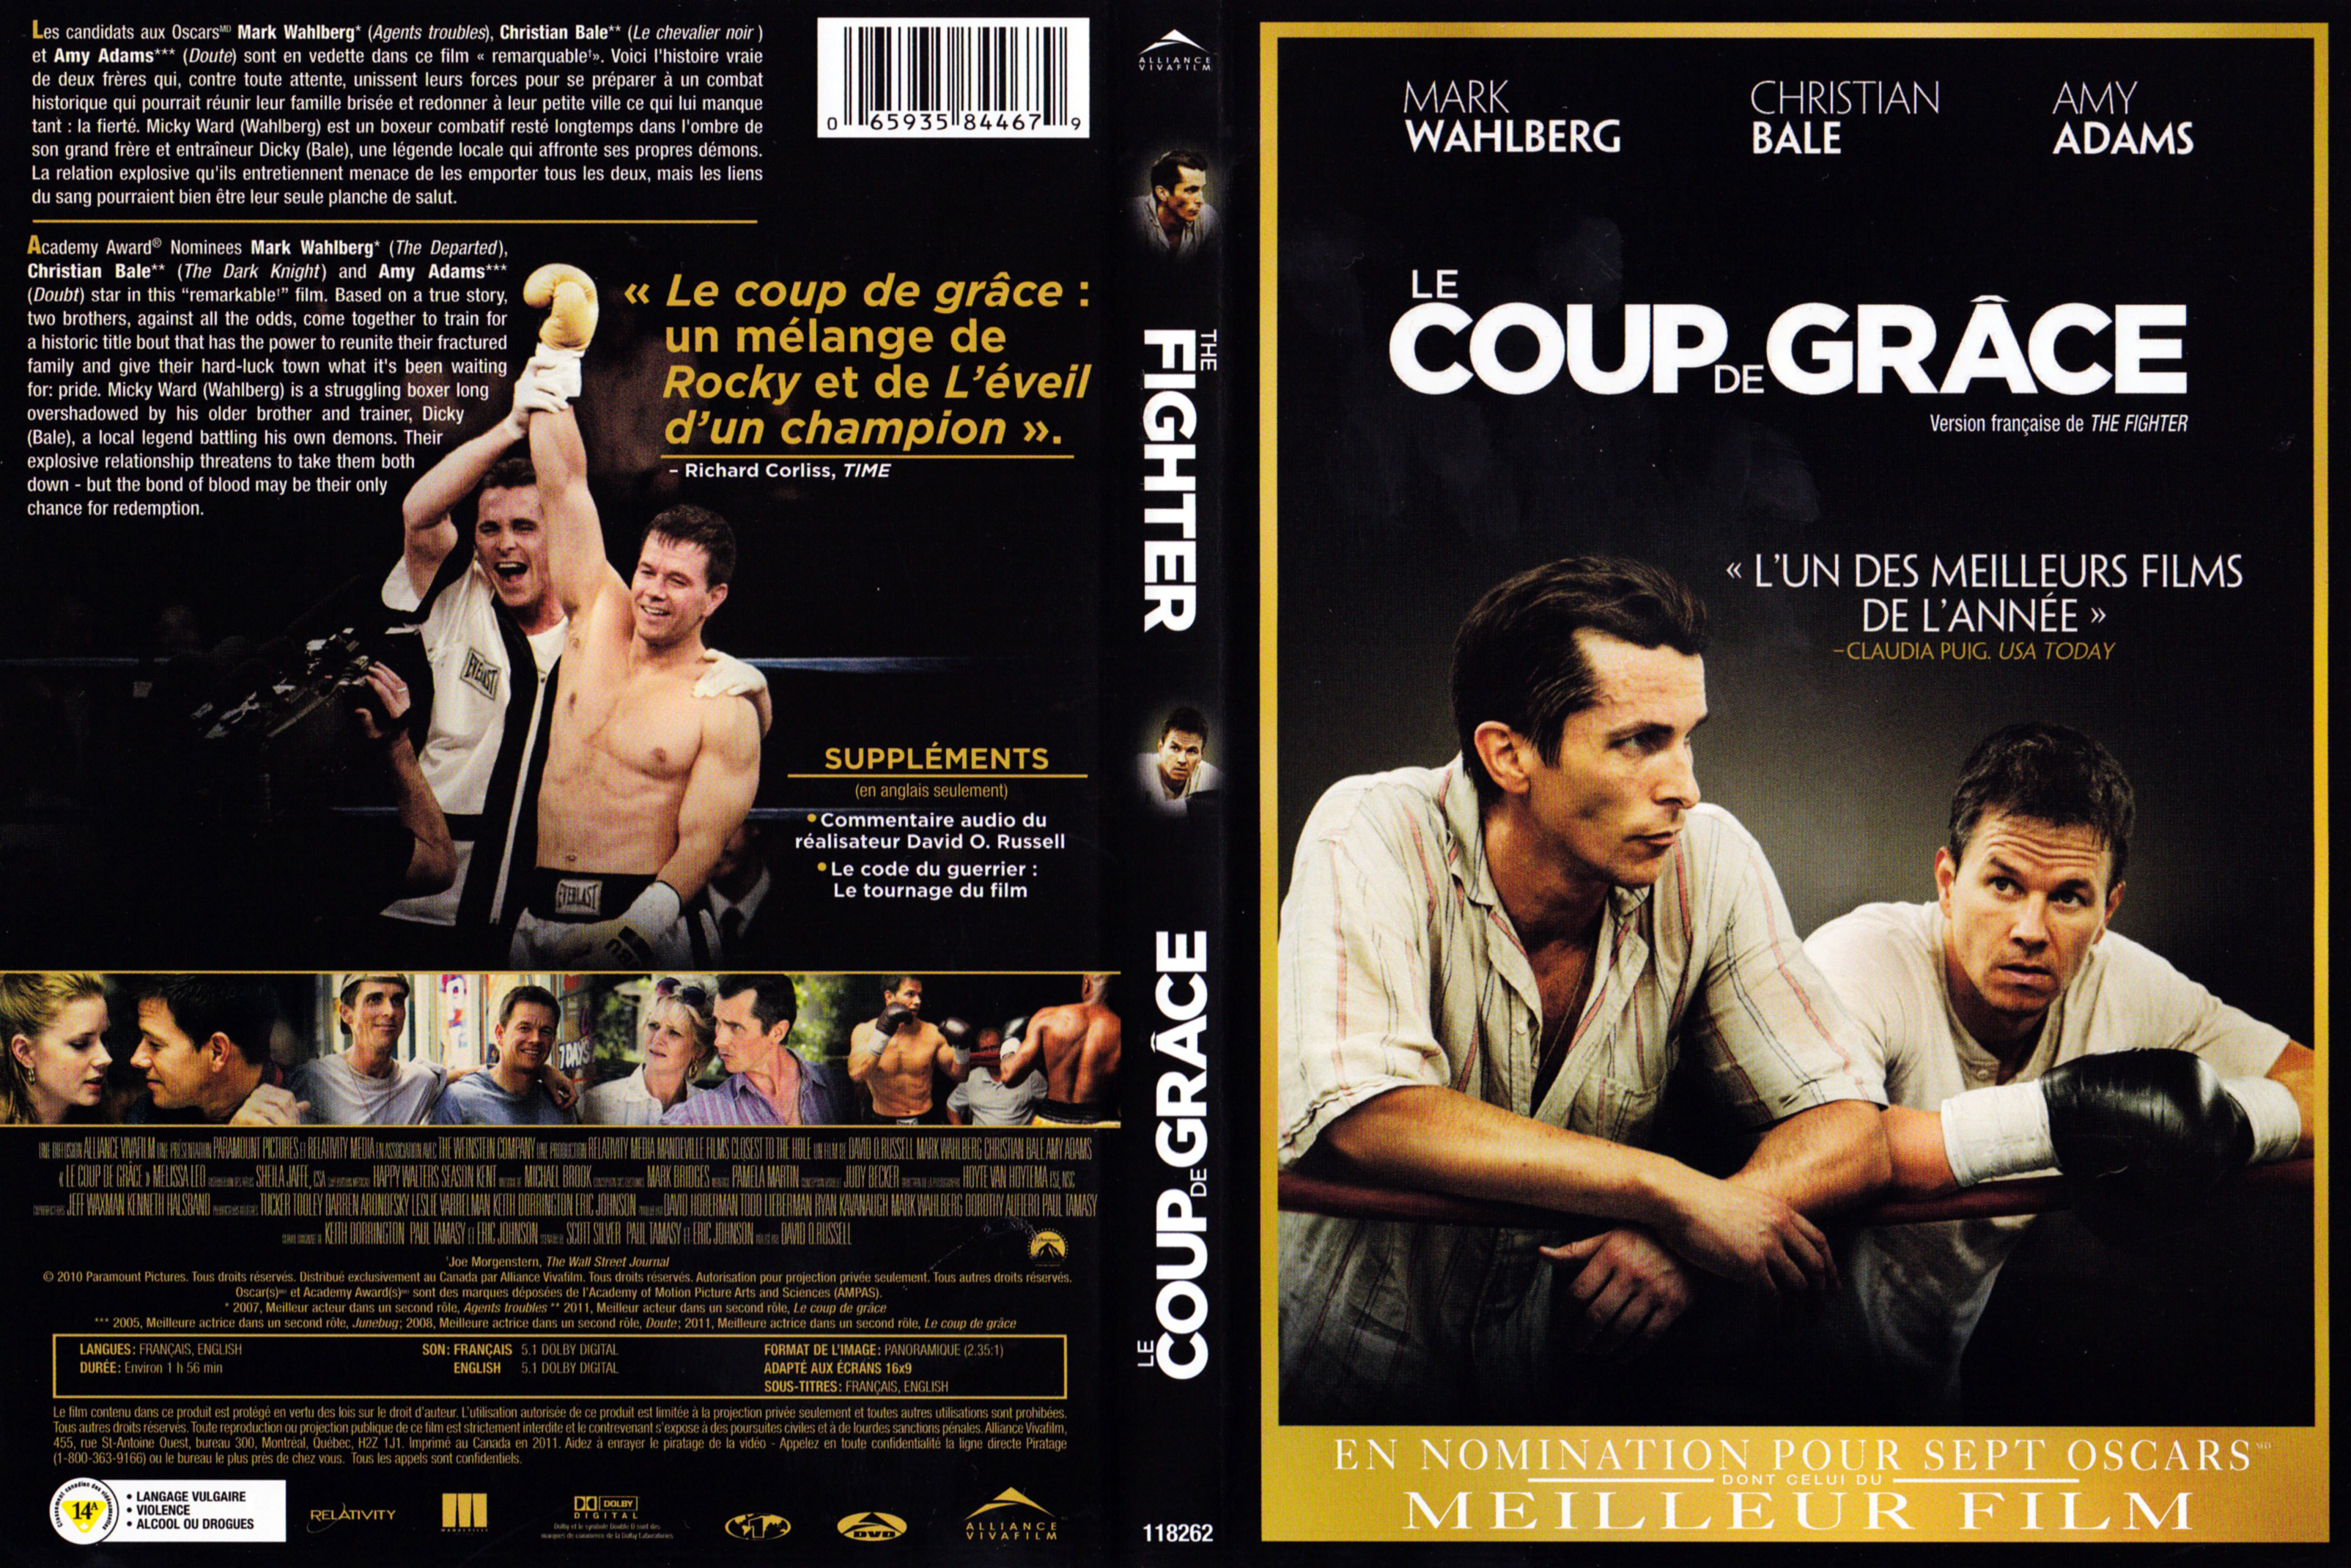 Jaquette DVD Le coup de grace - The fighter (Canadienne)